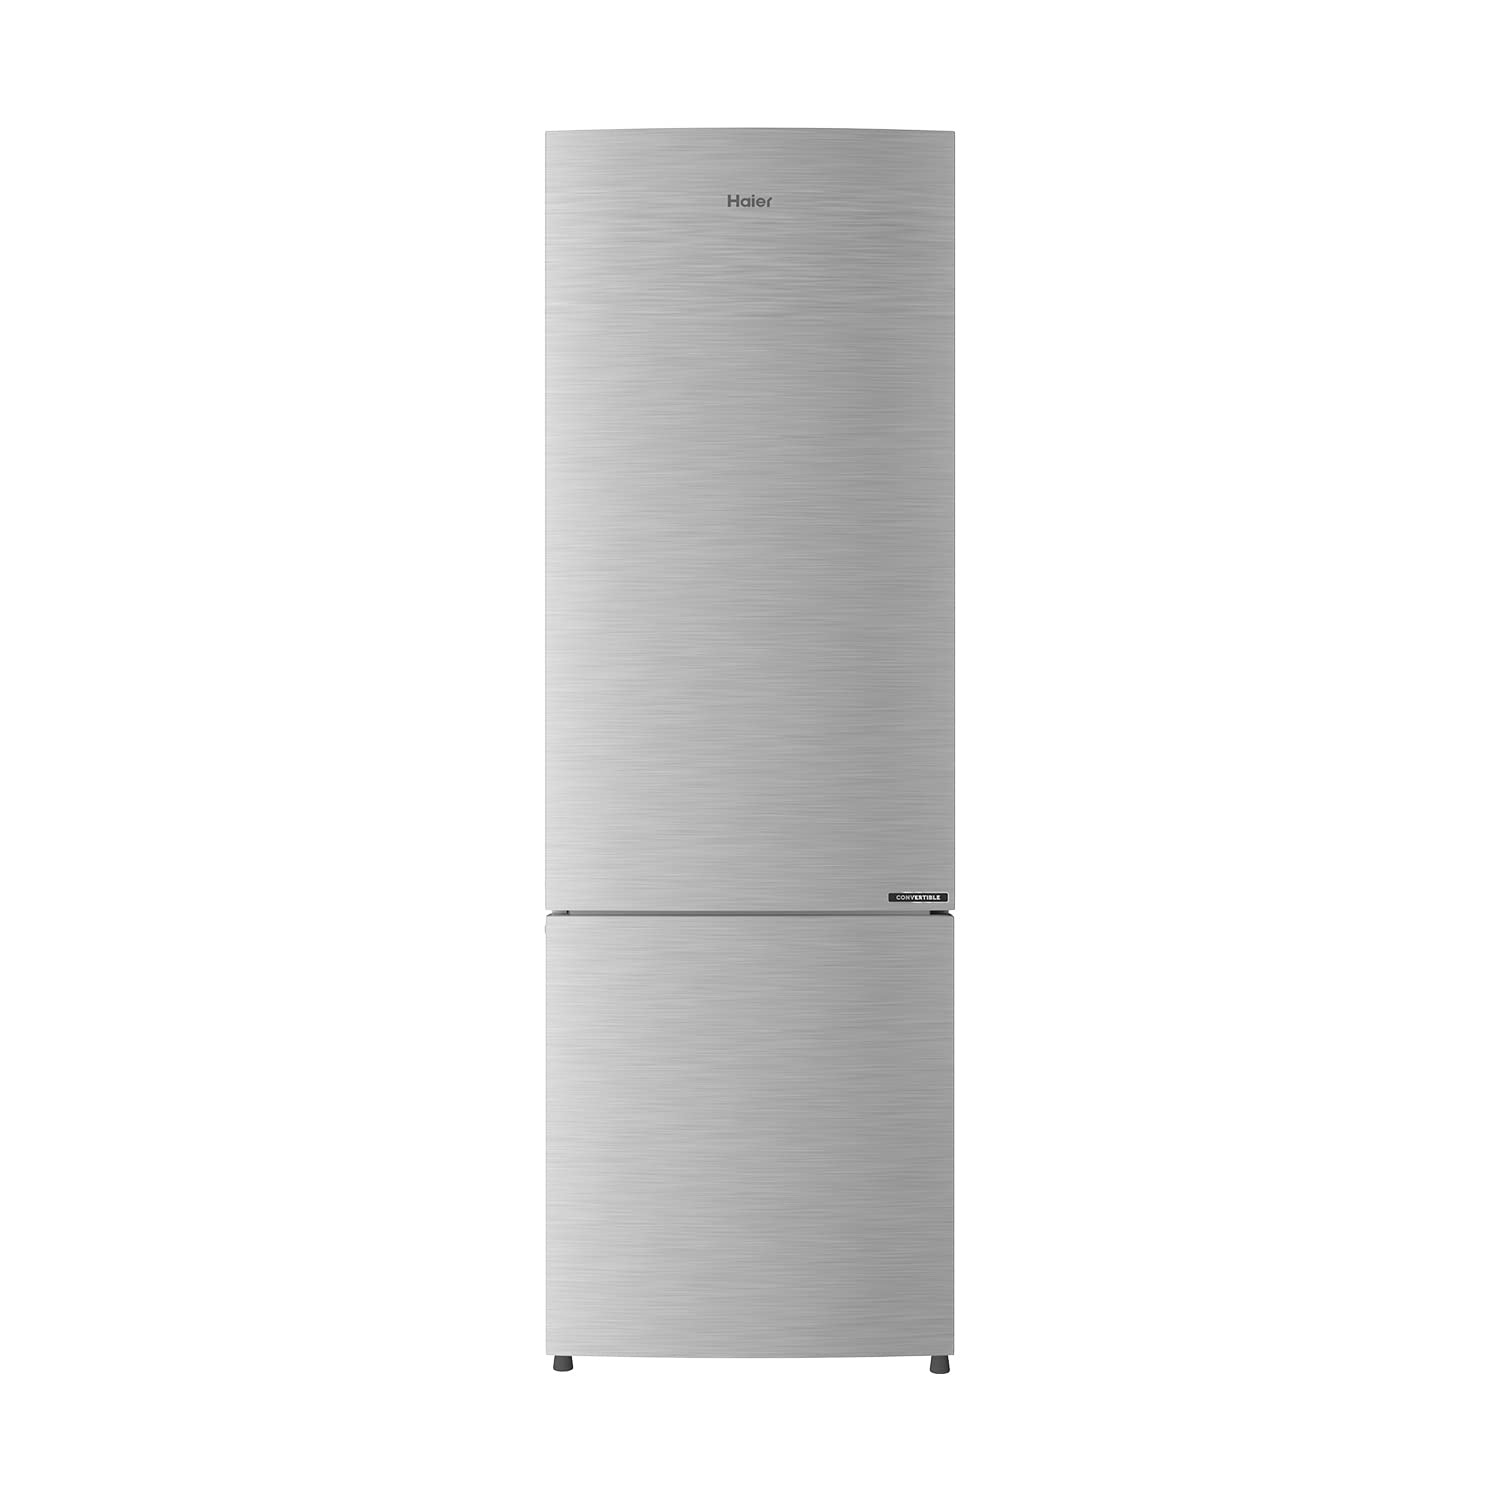 3rd double door refrigerator under 25000